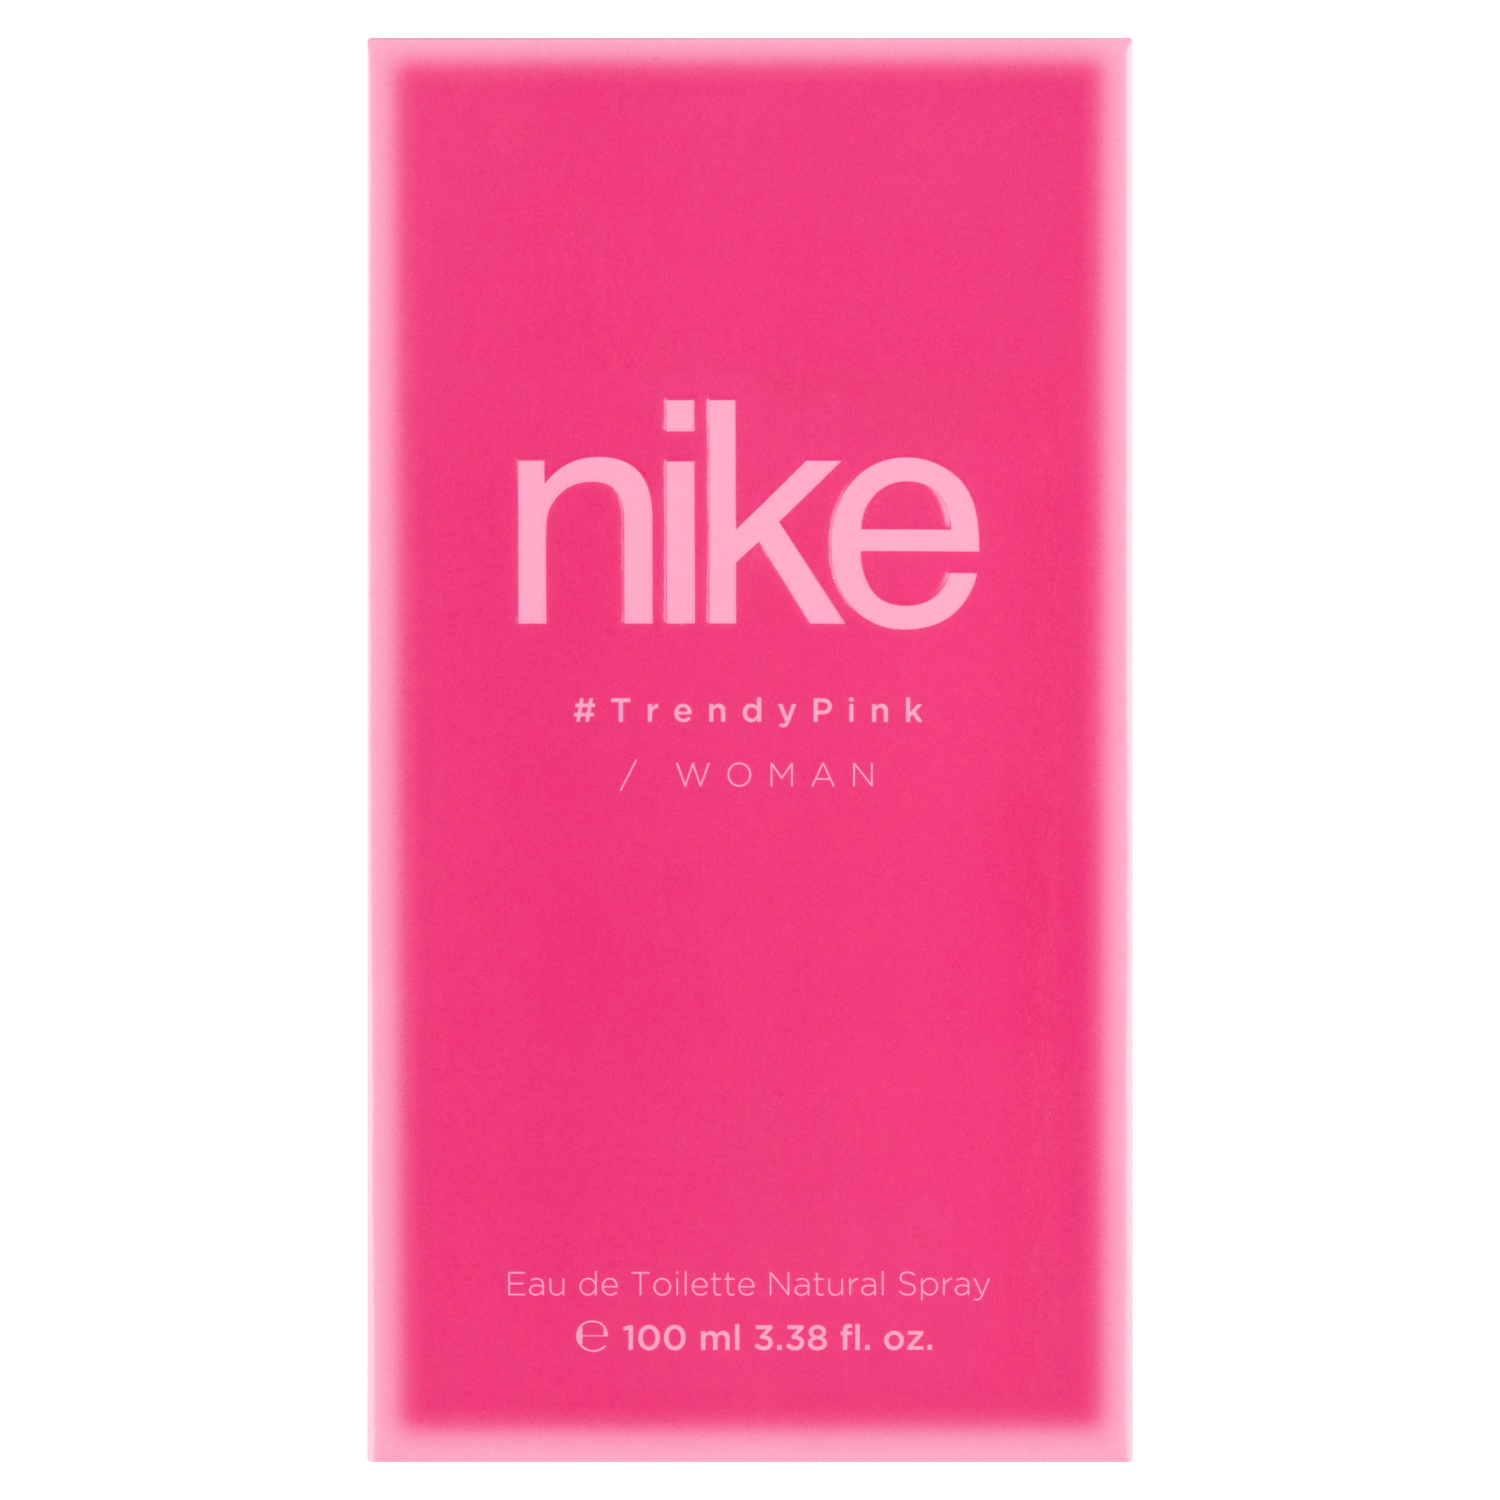 Натуральная женская туалетная вода Nike Trendy Pink, 100 мл туалетная вода женская woman secret imperatrice 100 мл